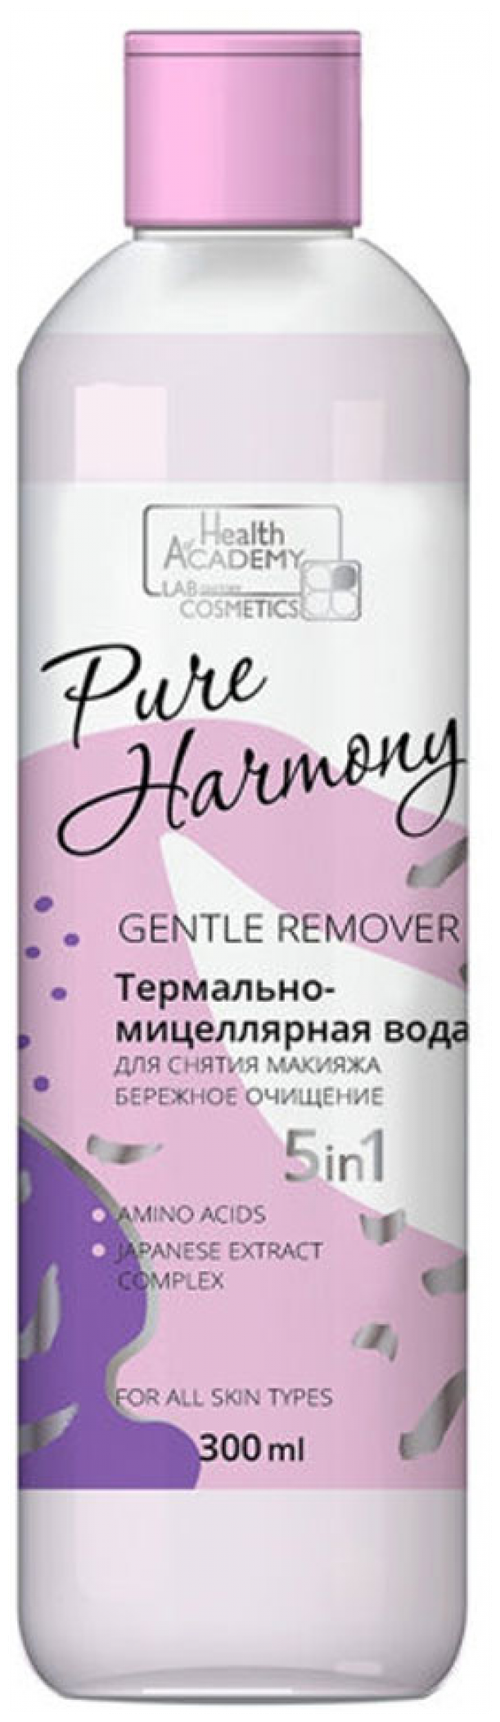 Мицеллярная вода для снятия макияжа - бережное очищение серии Pure Harmony, 300 мл